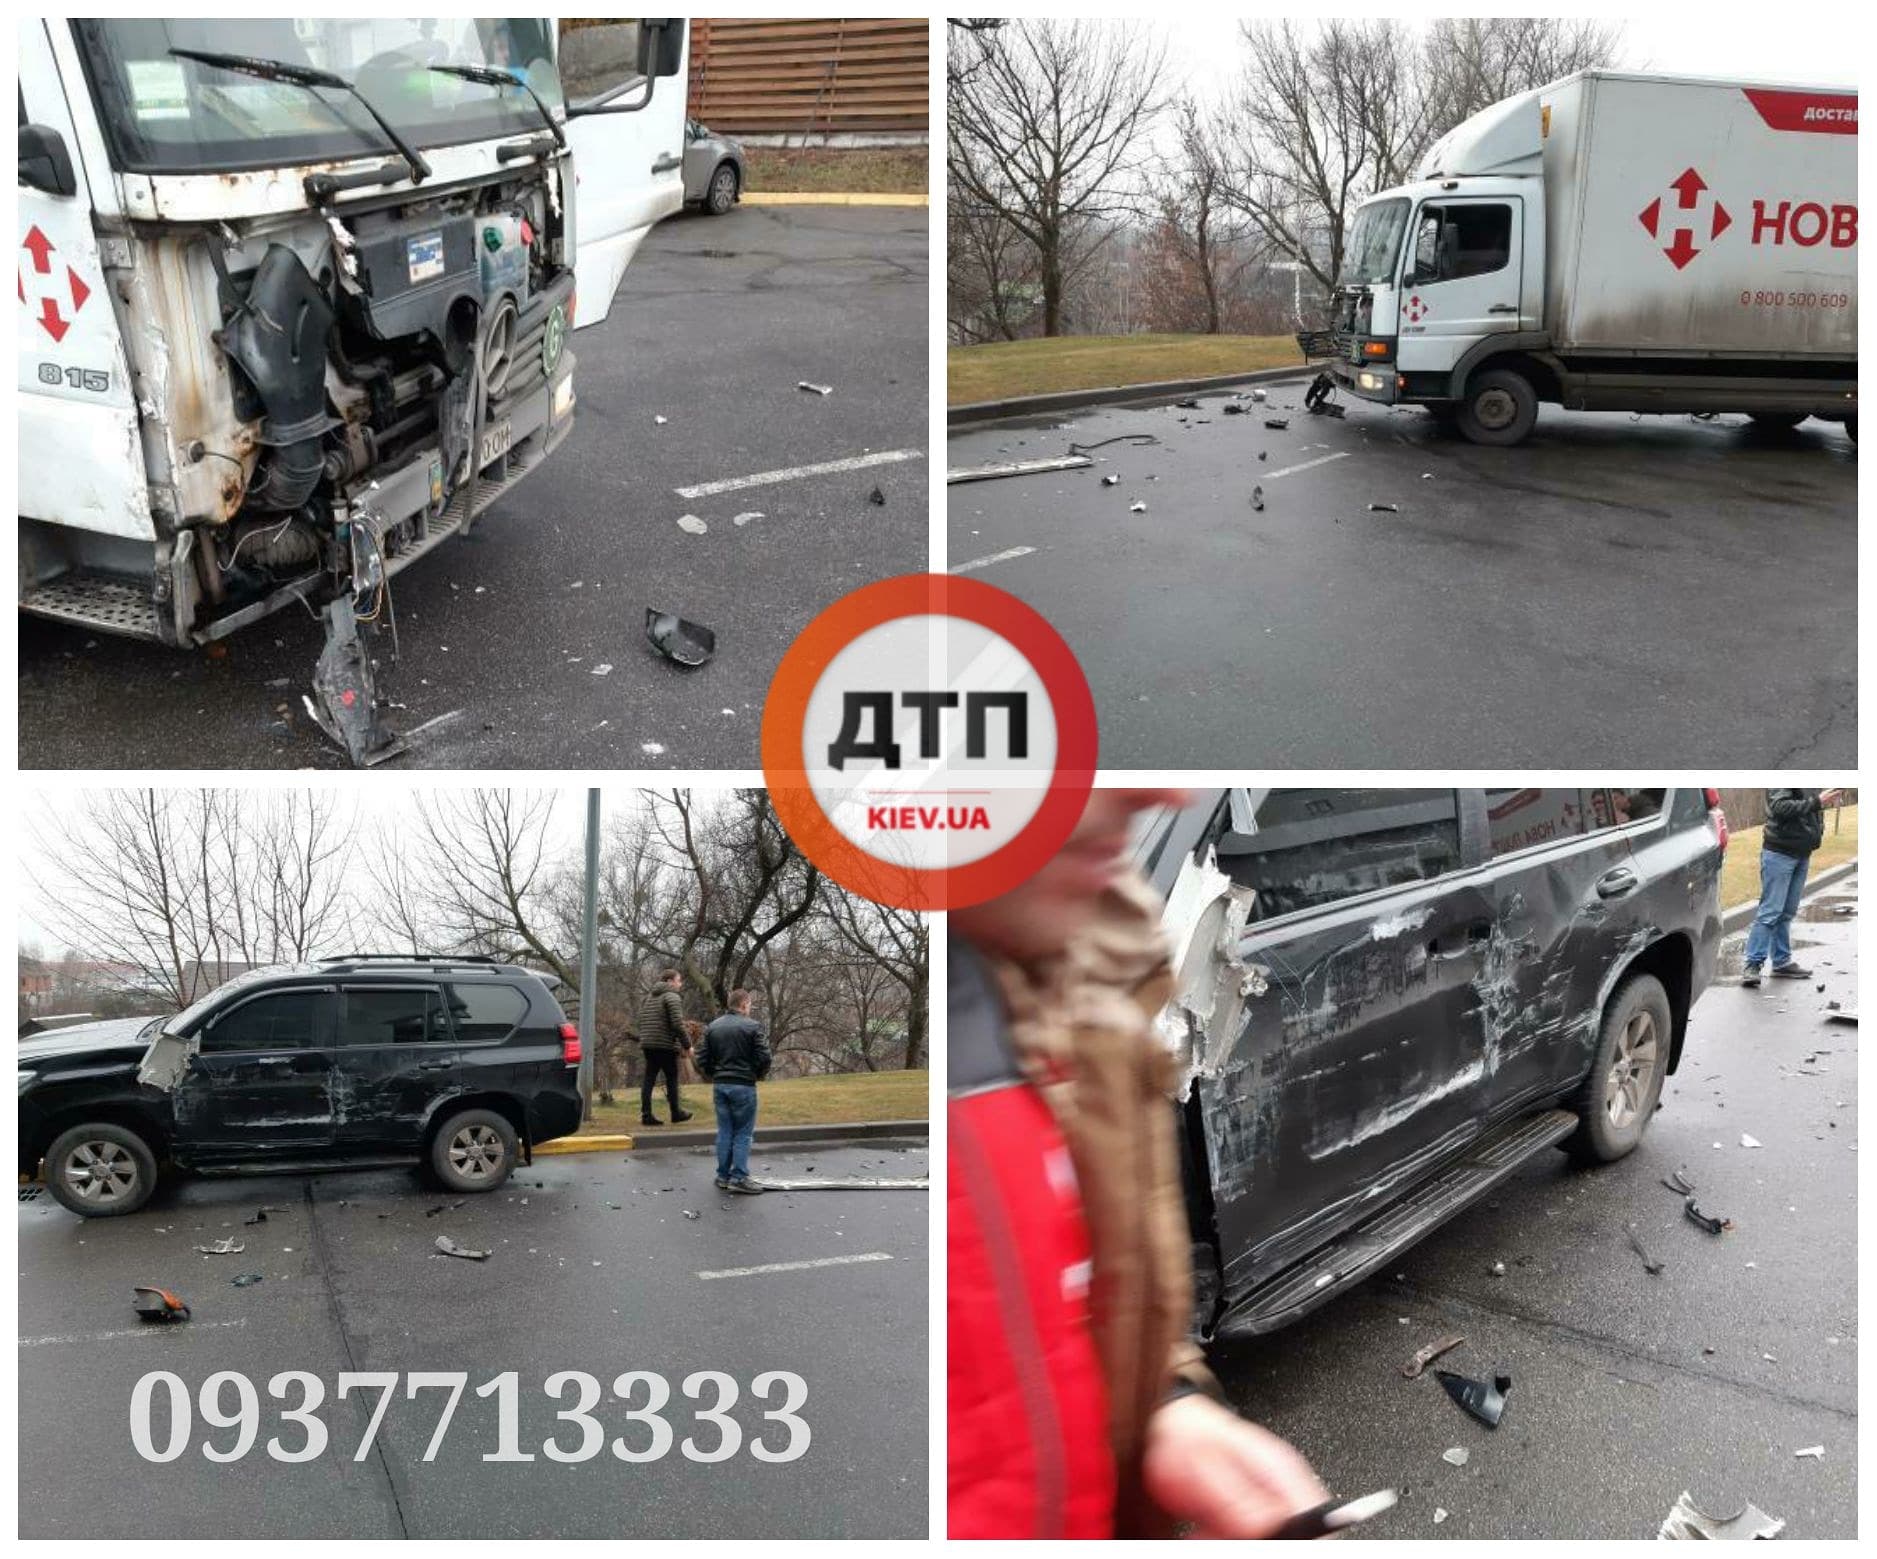 В Киеве на Столичном шоссе столкнулись грузовик Новой почты и автомобиль Toyota 